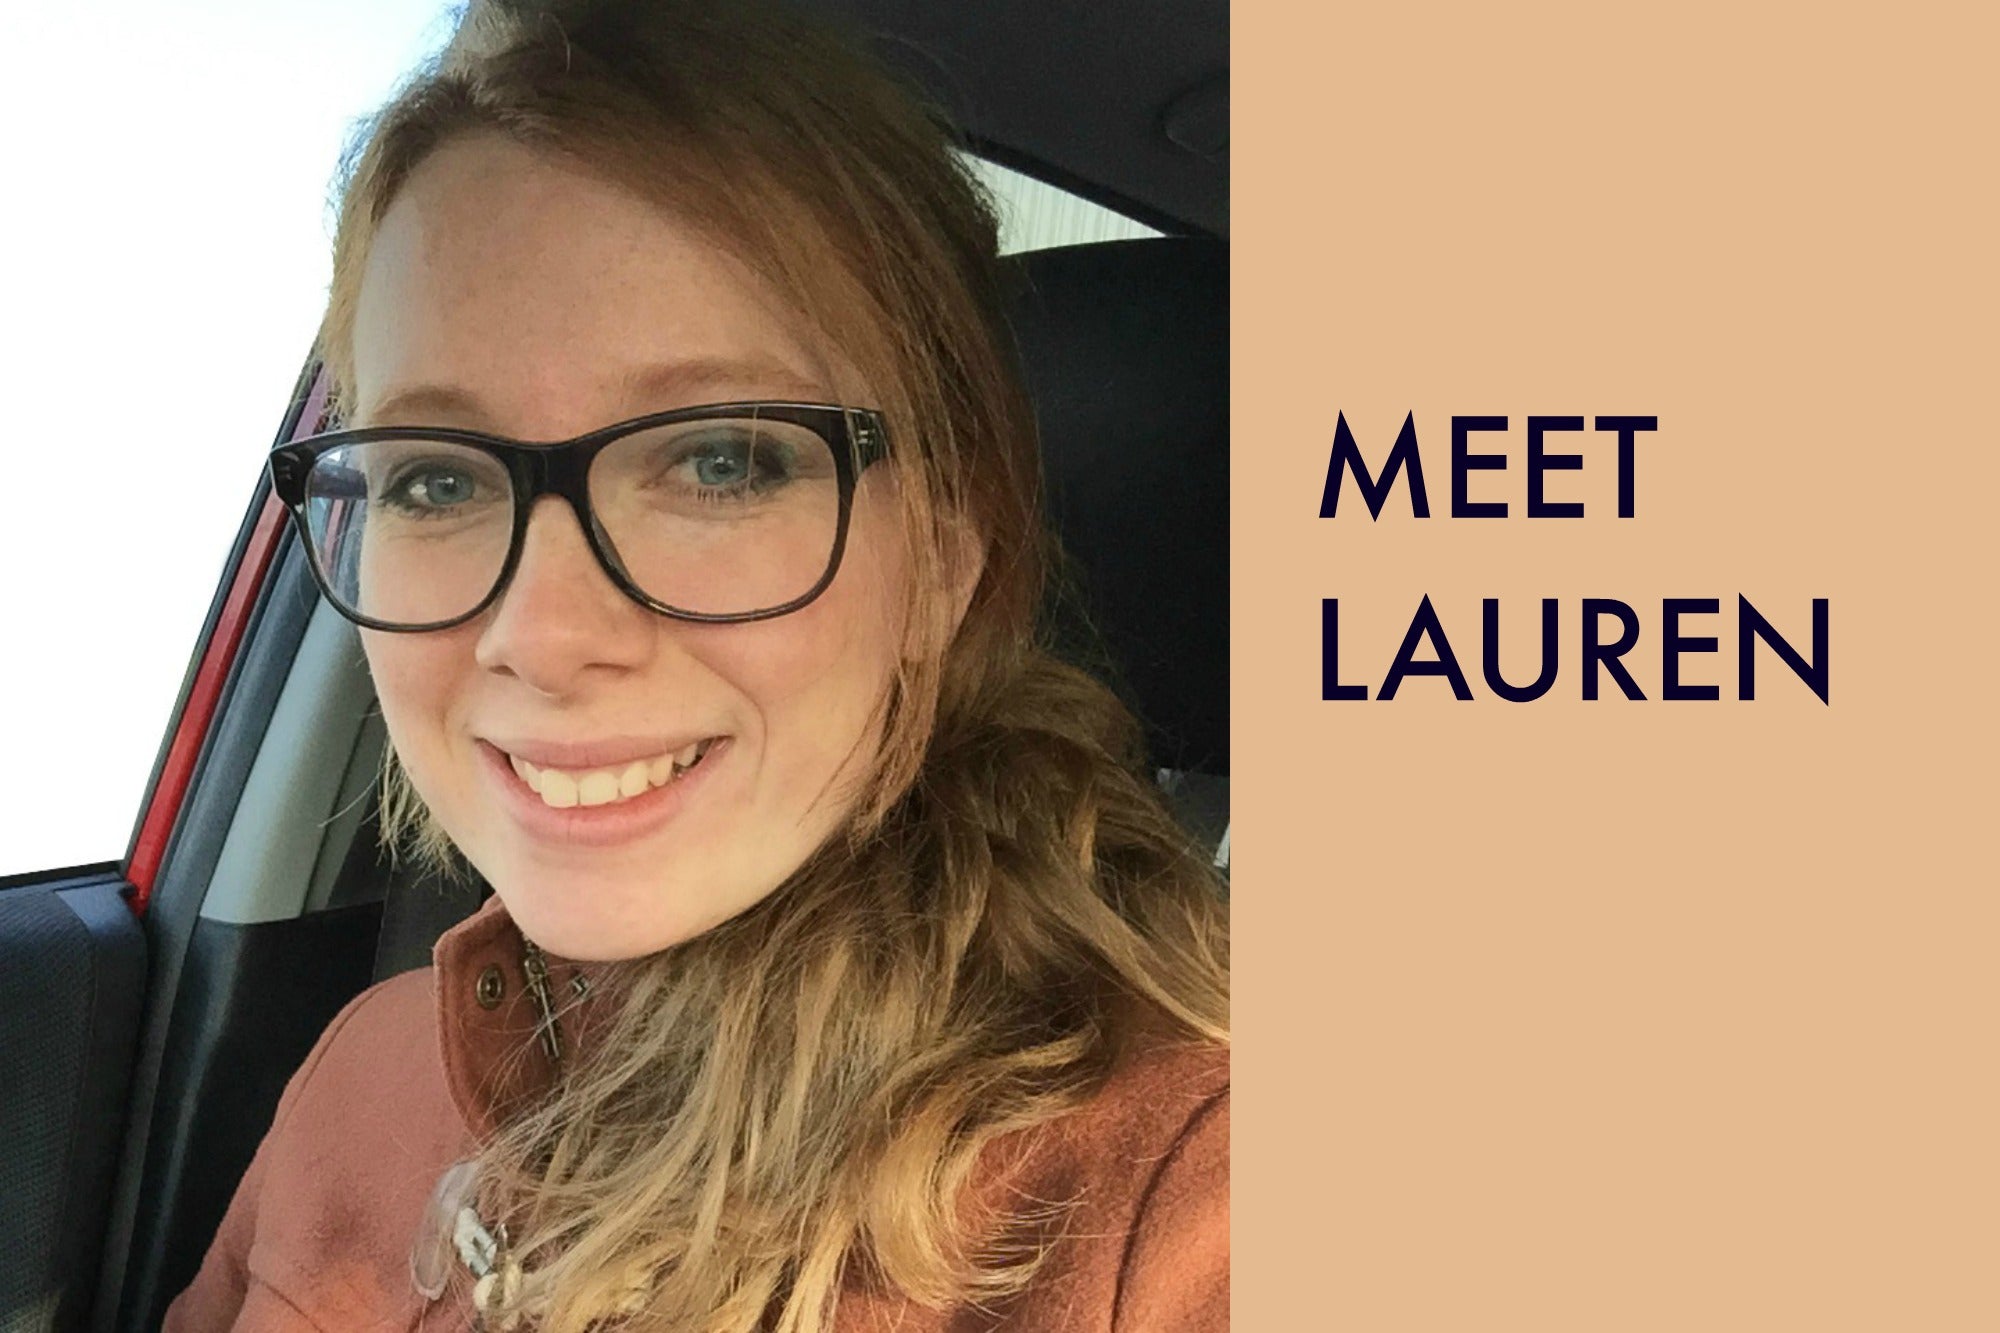 Meet Lauren our designer